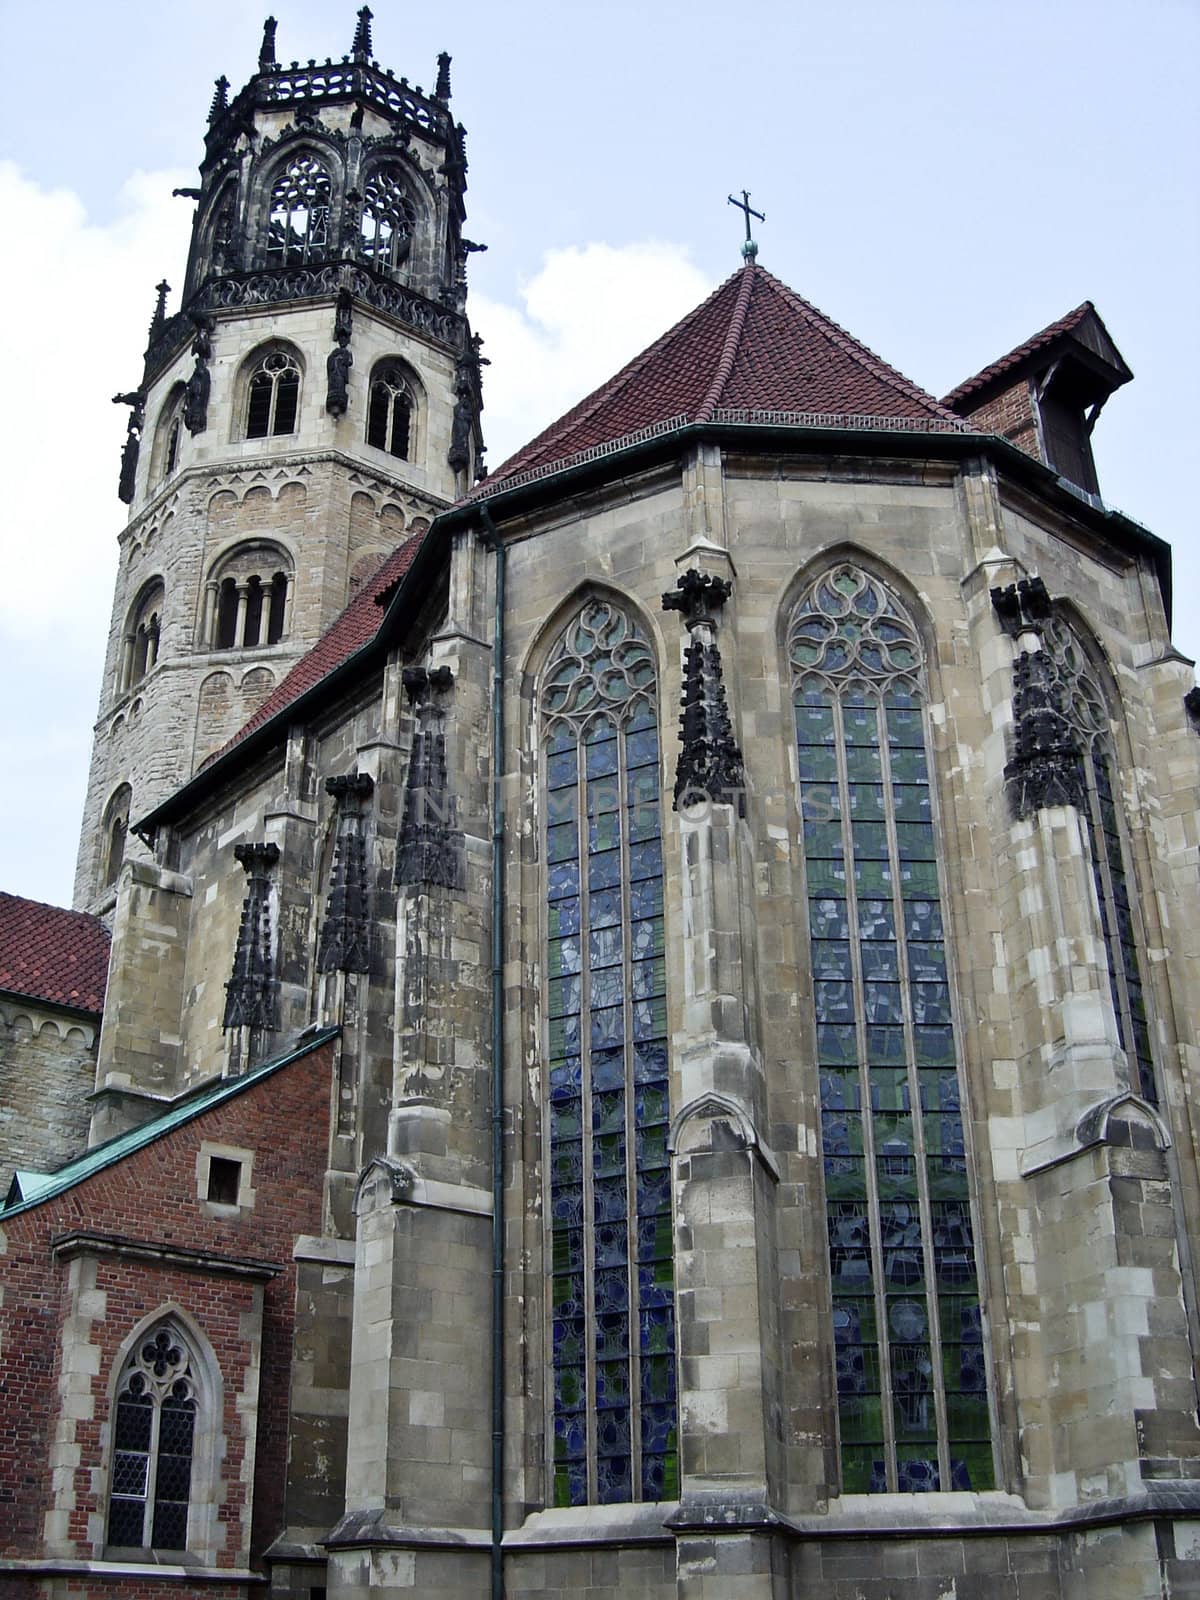 Münster, Germany, Liebfrauenkirche church, called Überwasserkirche
